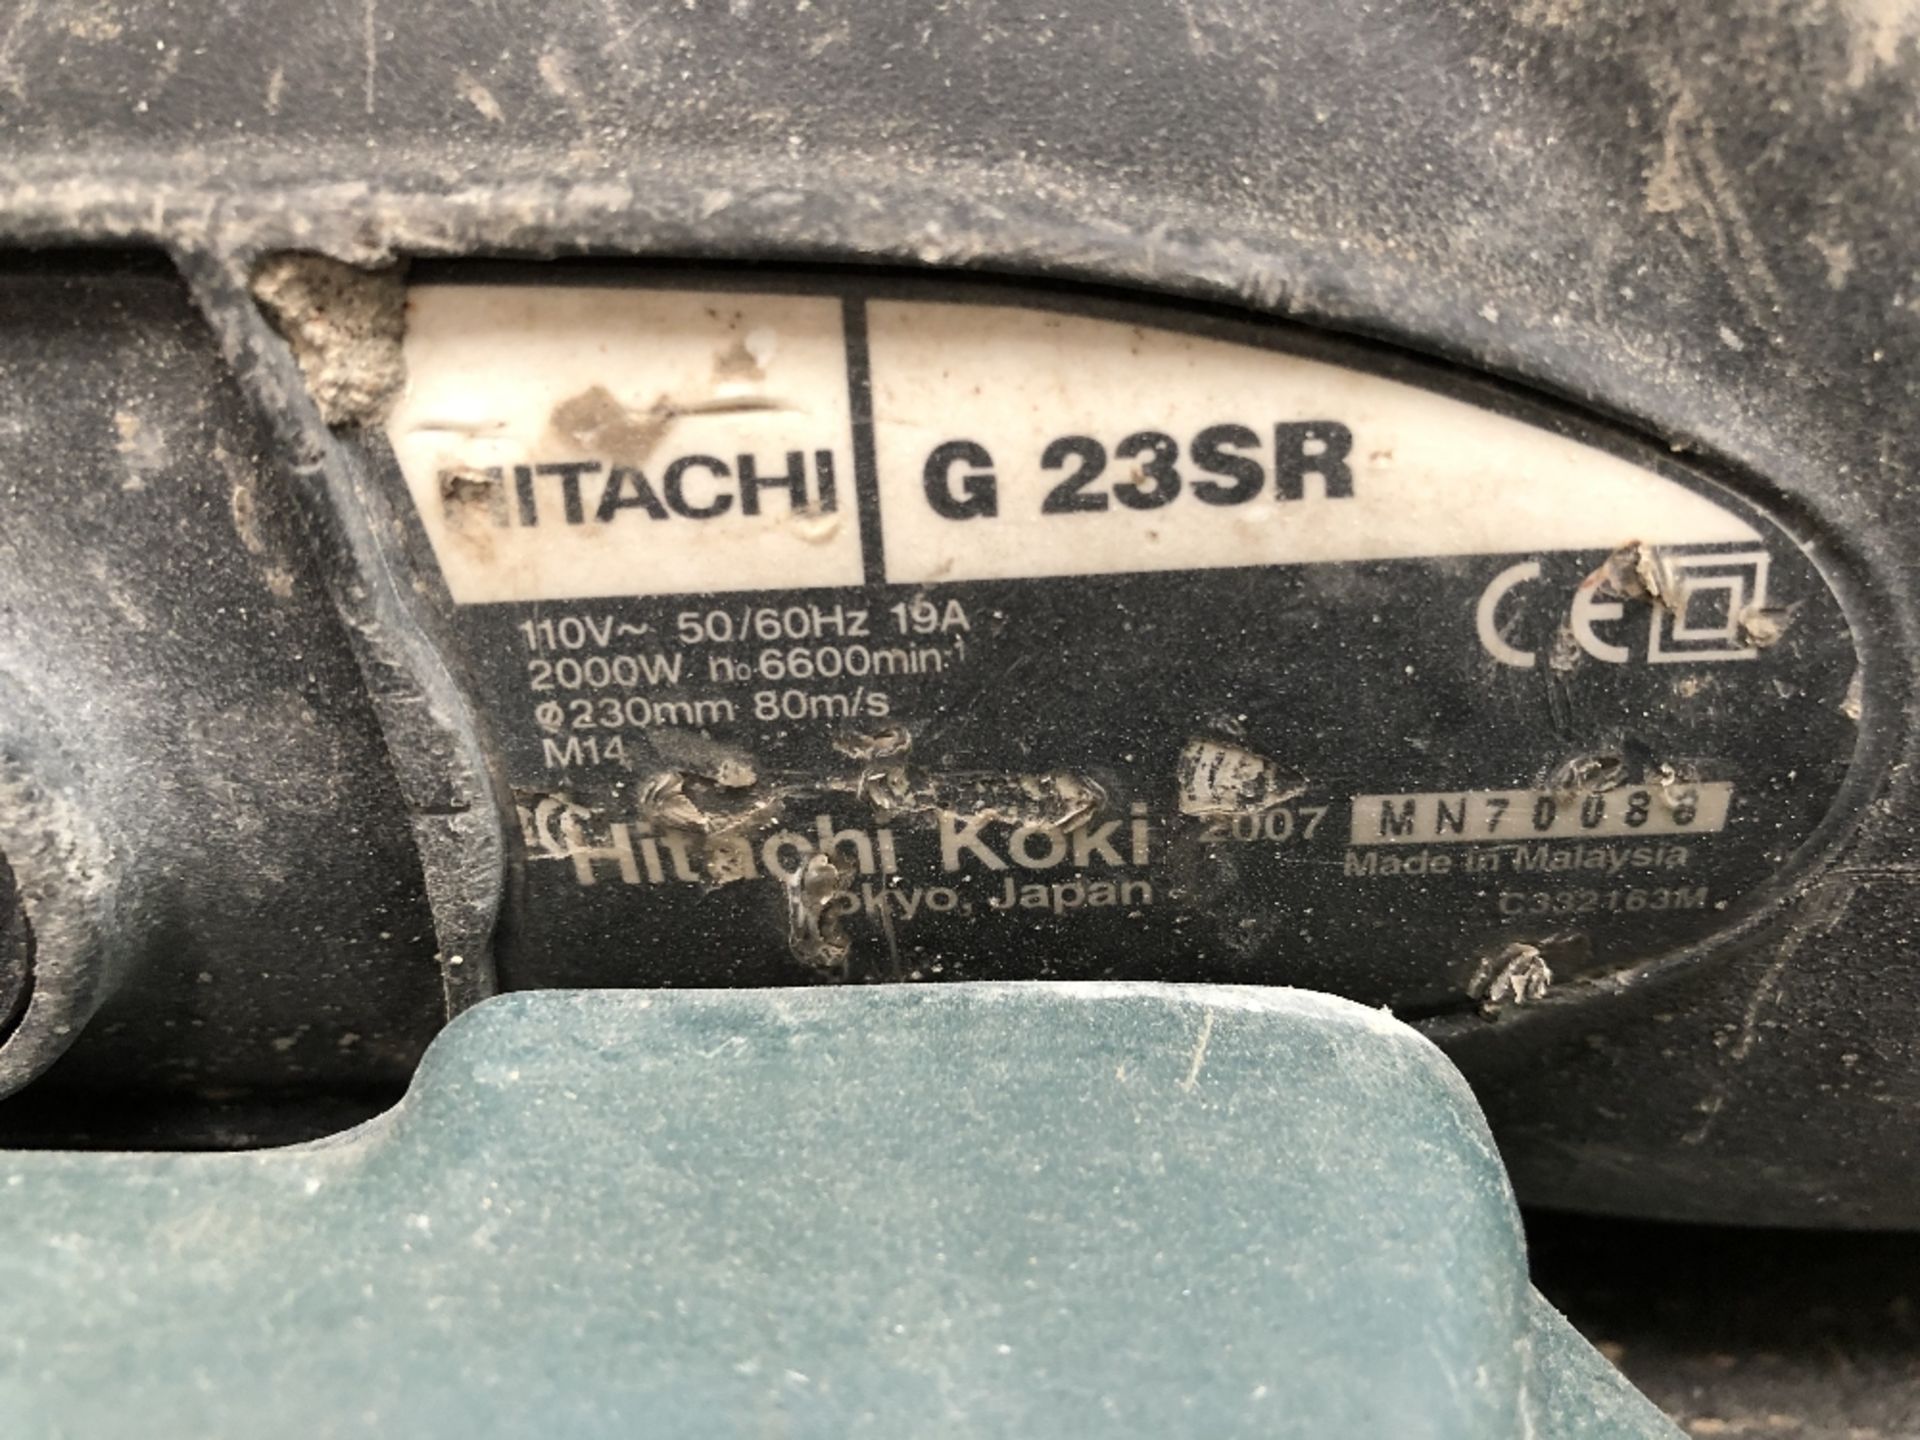 Hitachi G23SR 110v 230mm Angle Grinder - Image 3 of 3